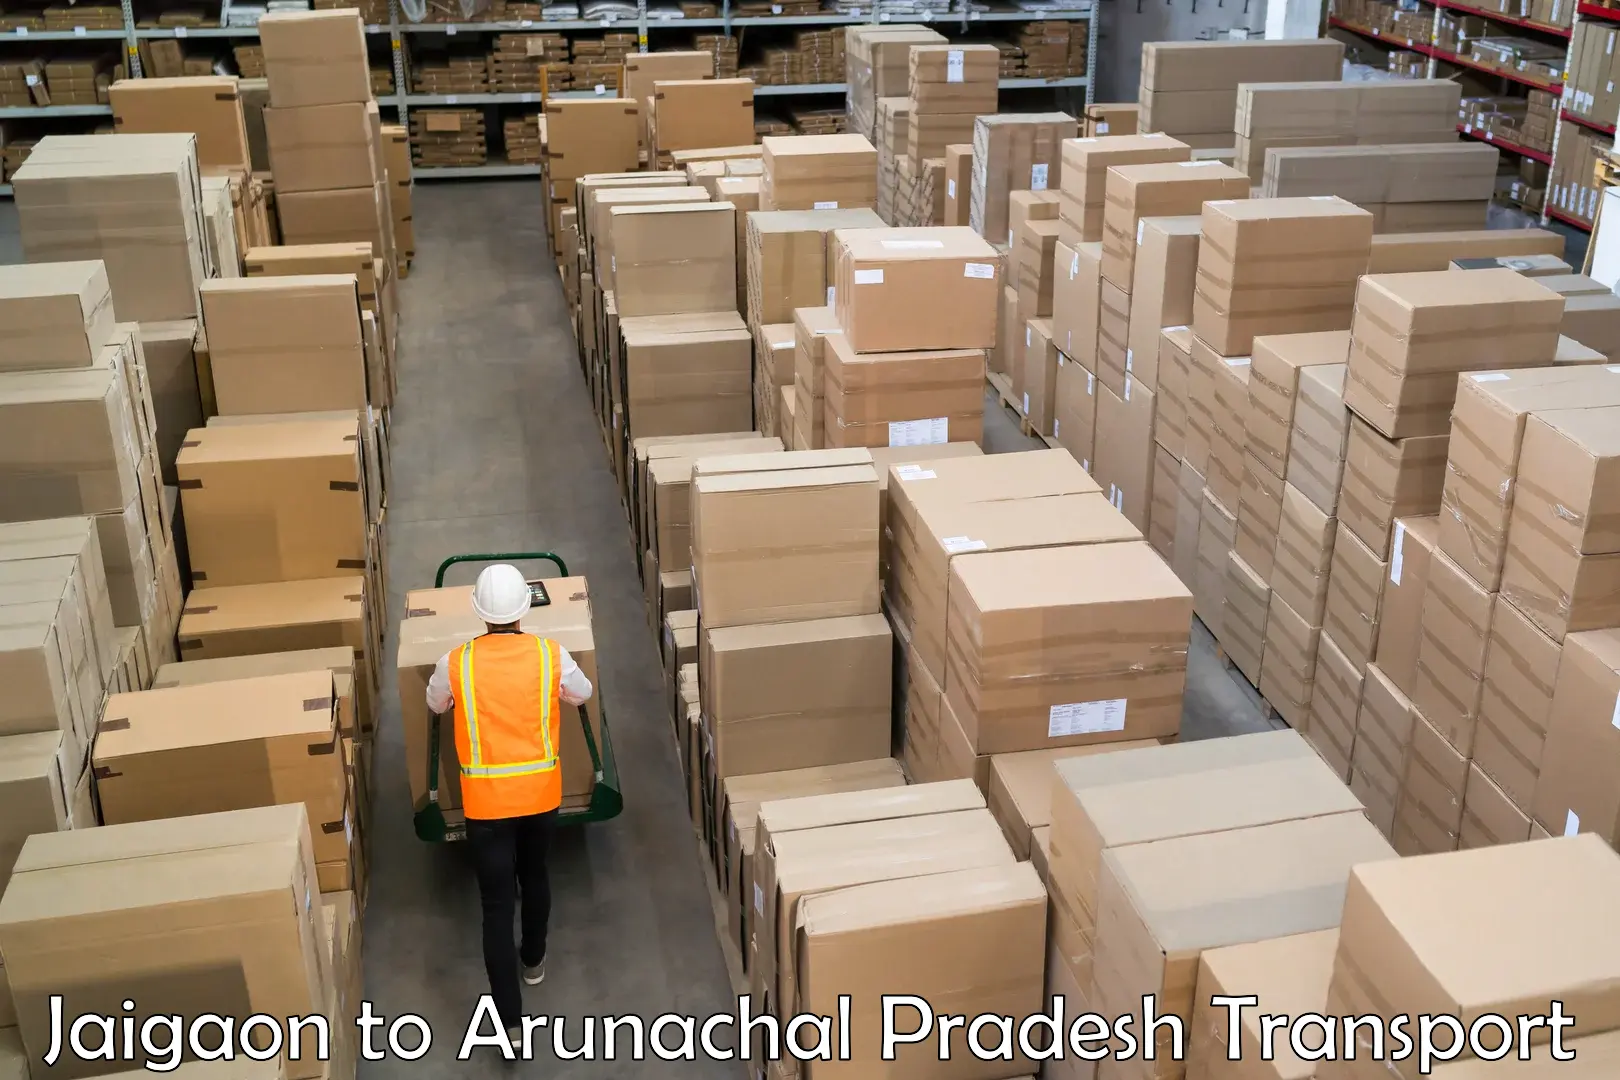 Cargo transport services in Jaigaon to Arunachal Pradesh